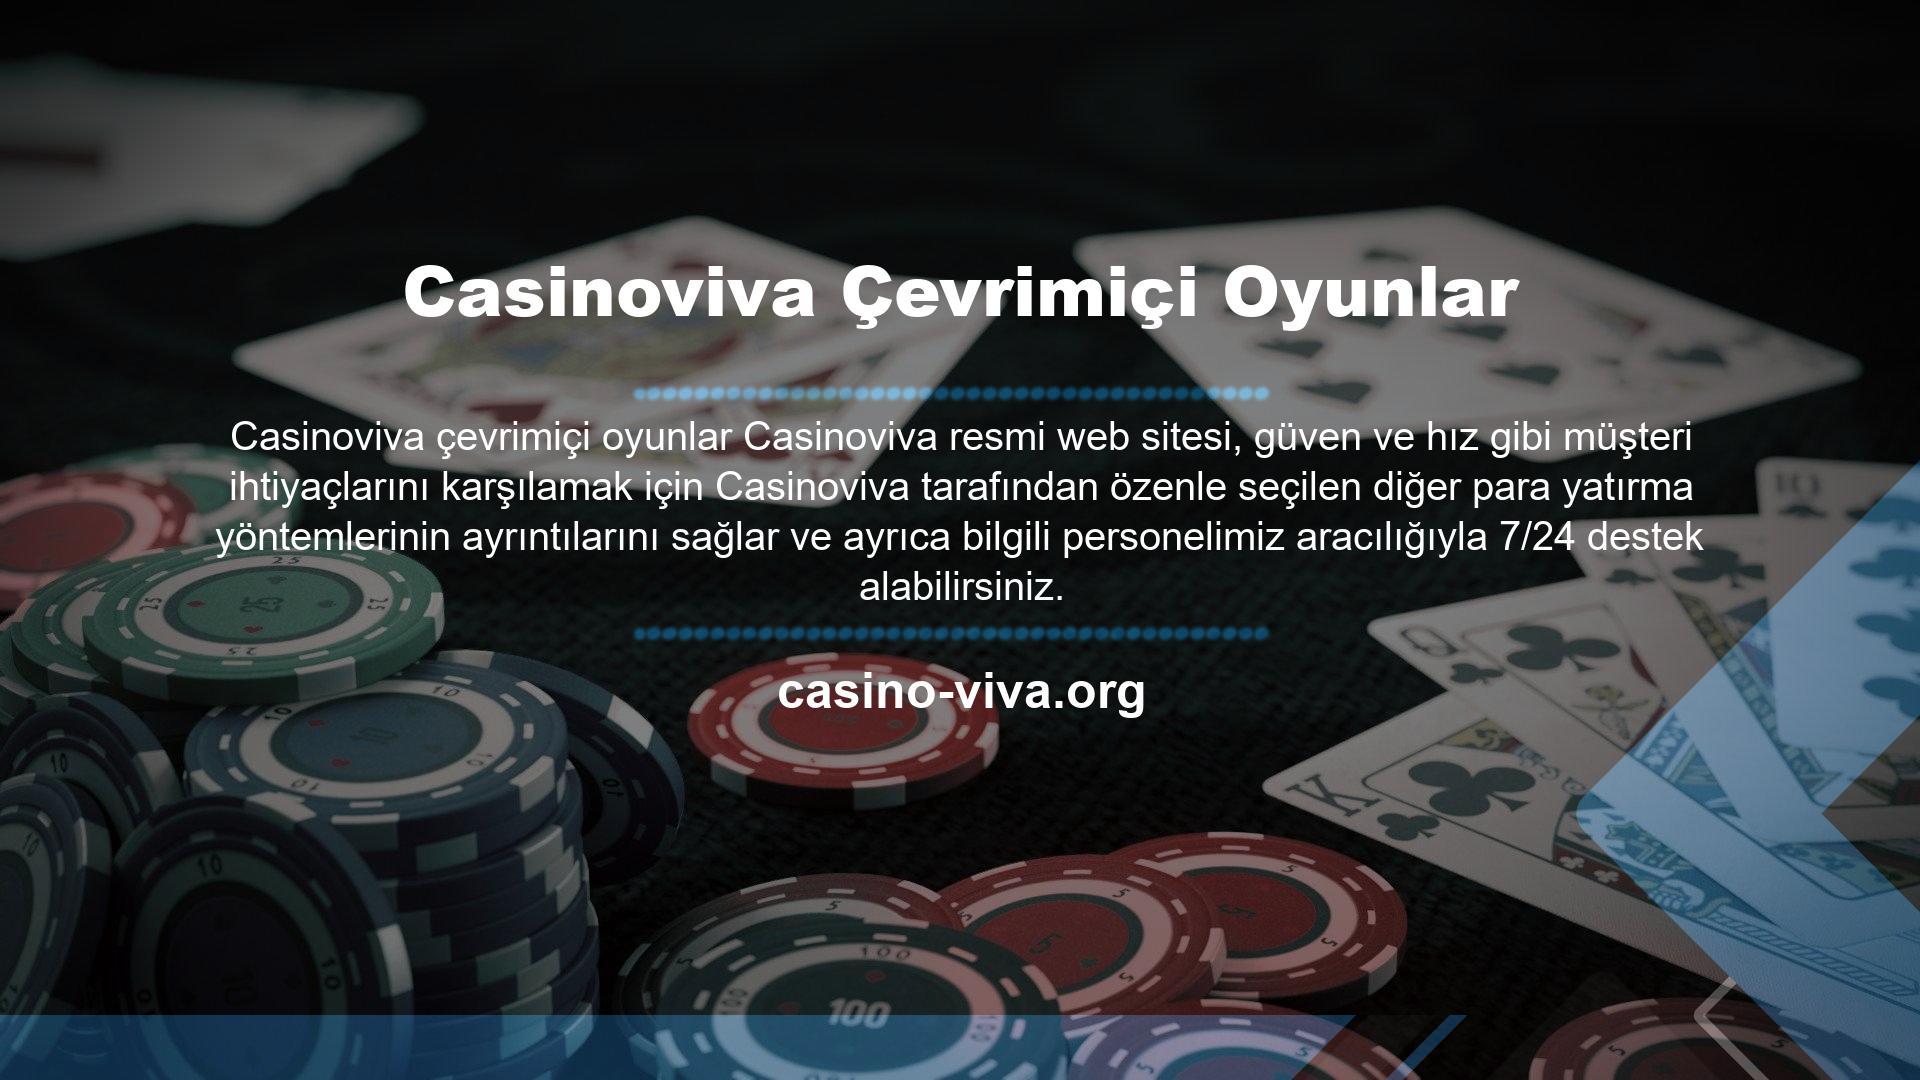 Resmi Site Casinoviva Casino Çevrimiçi Oyunlar Yardım Casinoviva, müşteri odaklılığını anlayan, zengin bir deneyime ve yaratıcılığa sahip ekibi tarafından en son teknolojinin optimum kullanımıyla oluşturulmuş çok çeşitli slot, casino ve oyunlarıyla öne çıkıyor